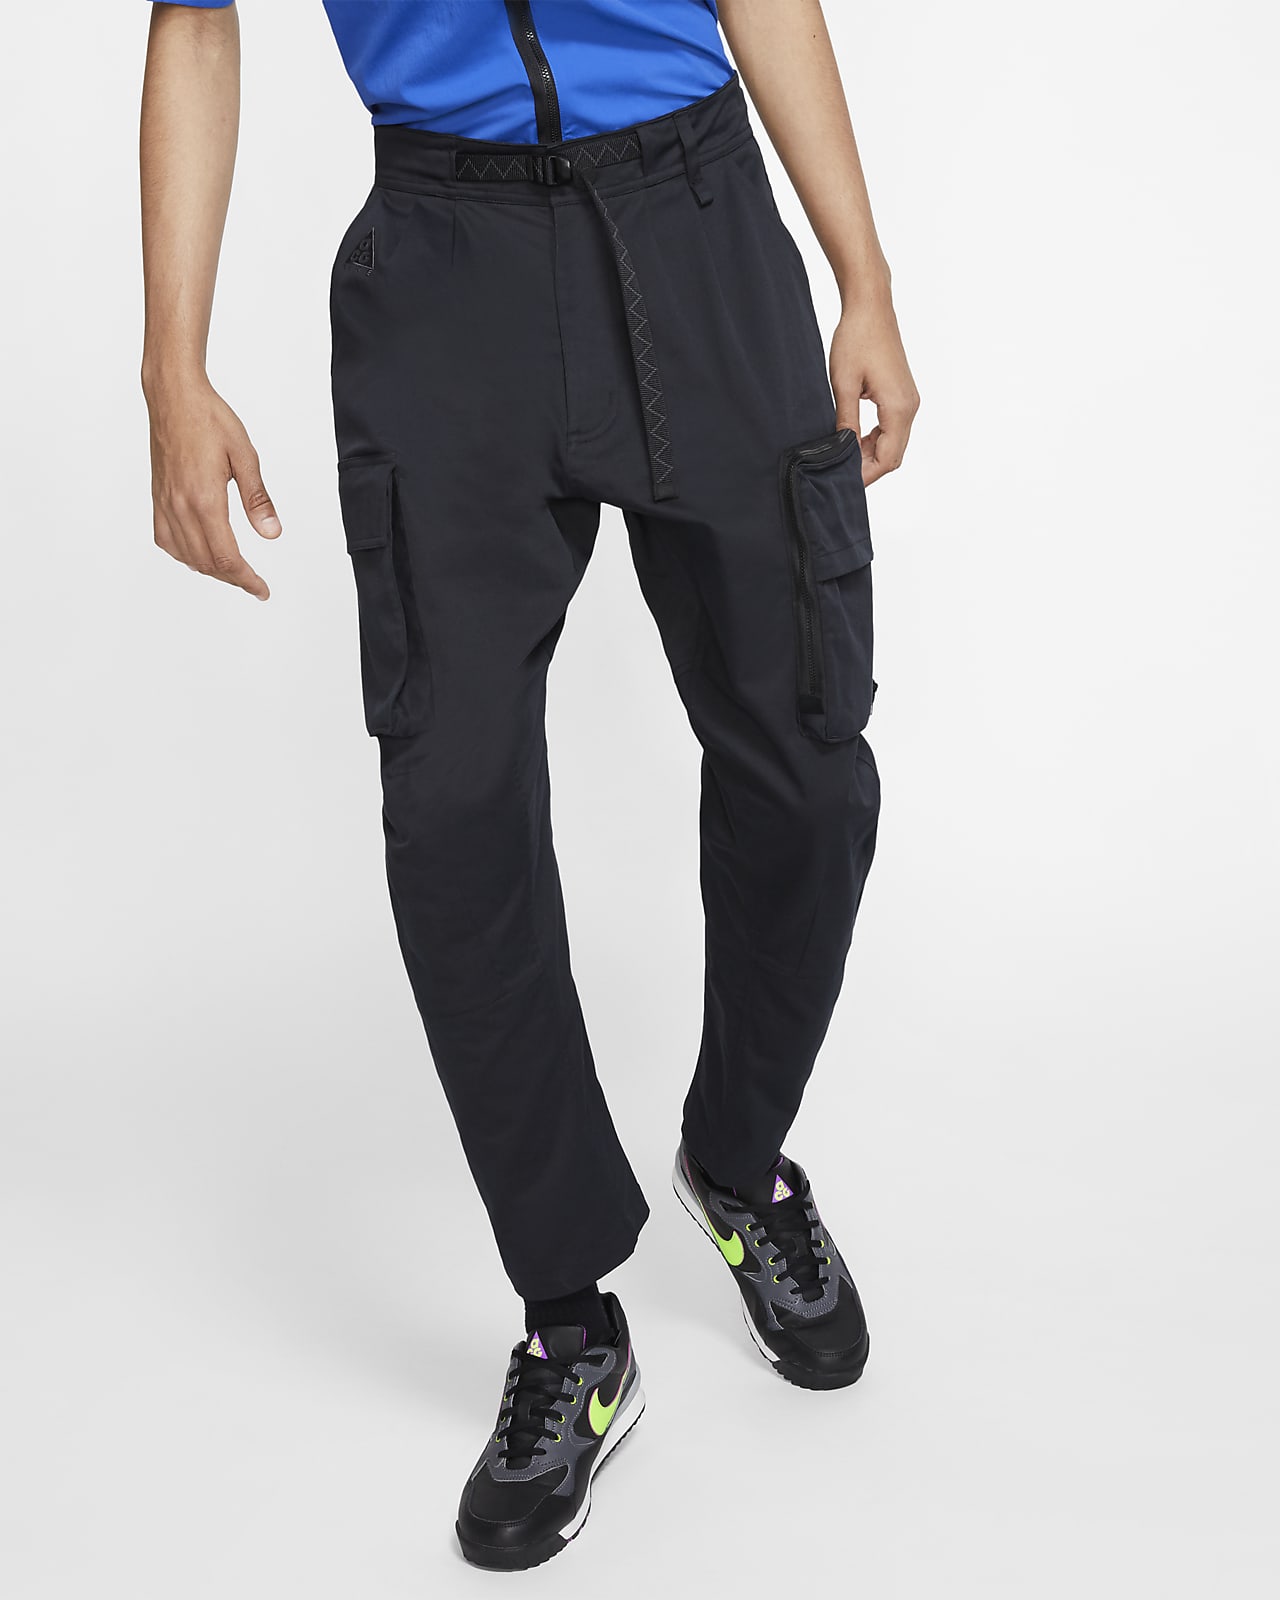 Pantalones cargo tejidos para Hombre Nike ACG. Nike.com